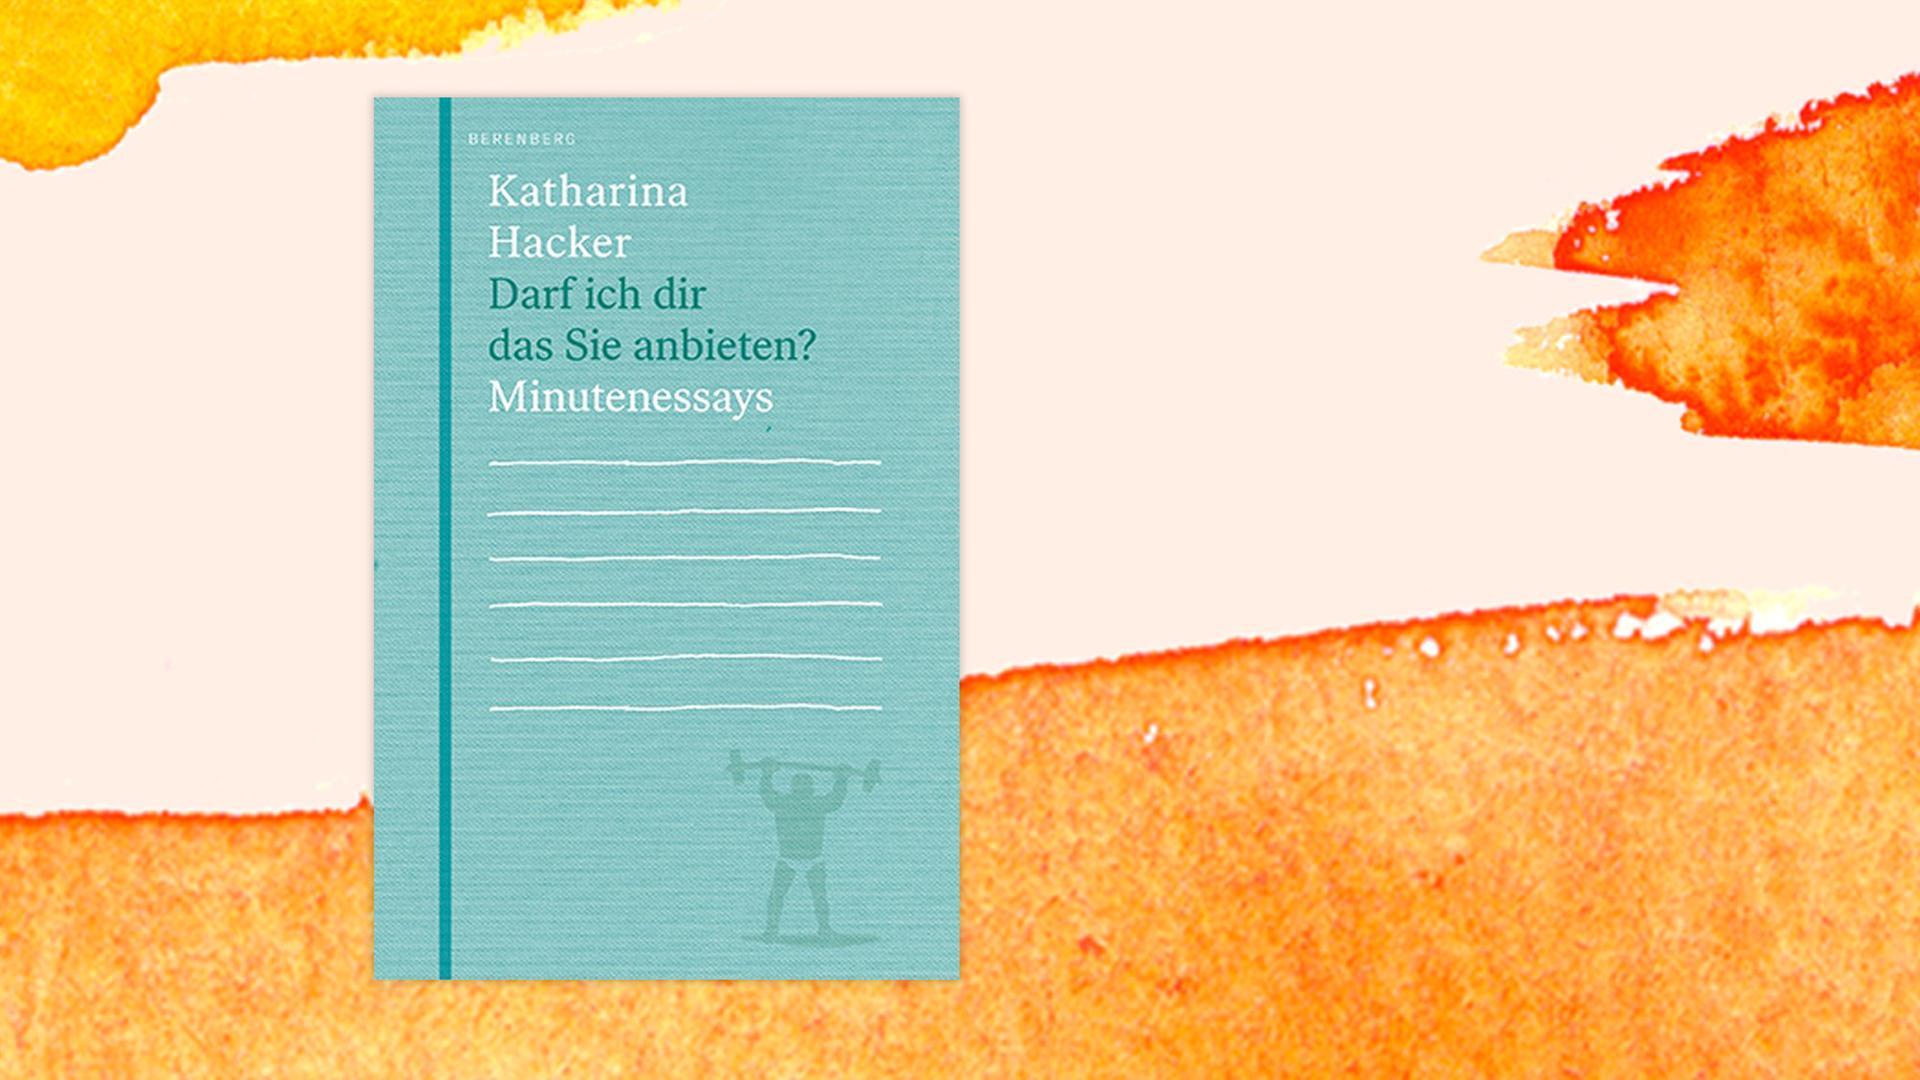 Buchcover zu Katharina Hacker: "Darf ich dir das Sie anbieten?"